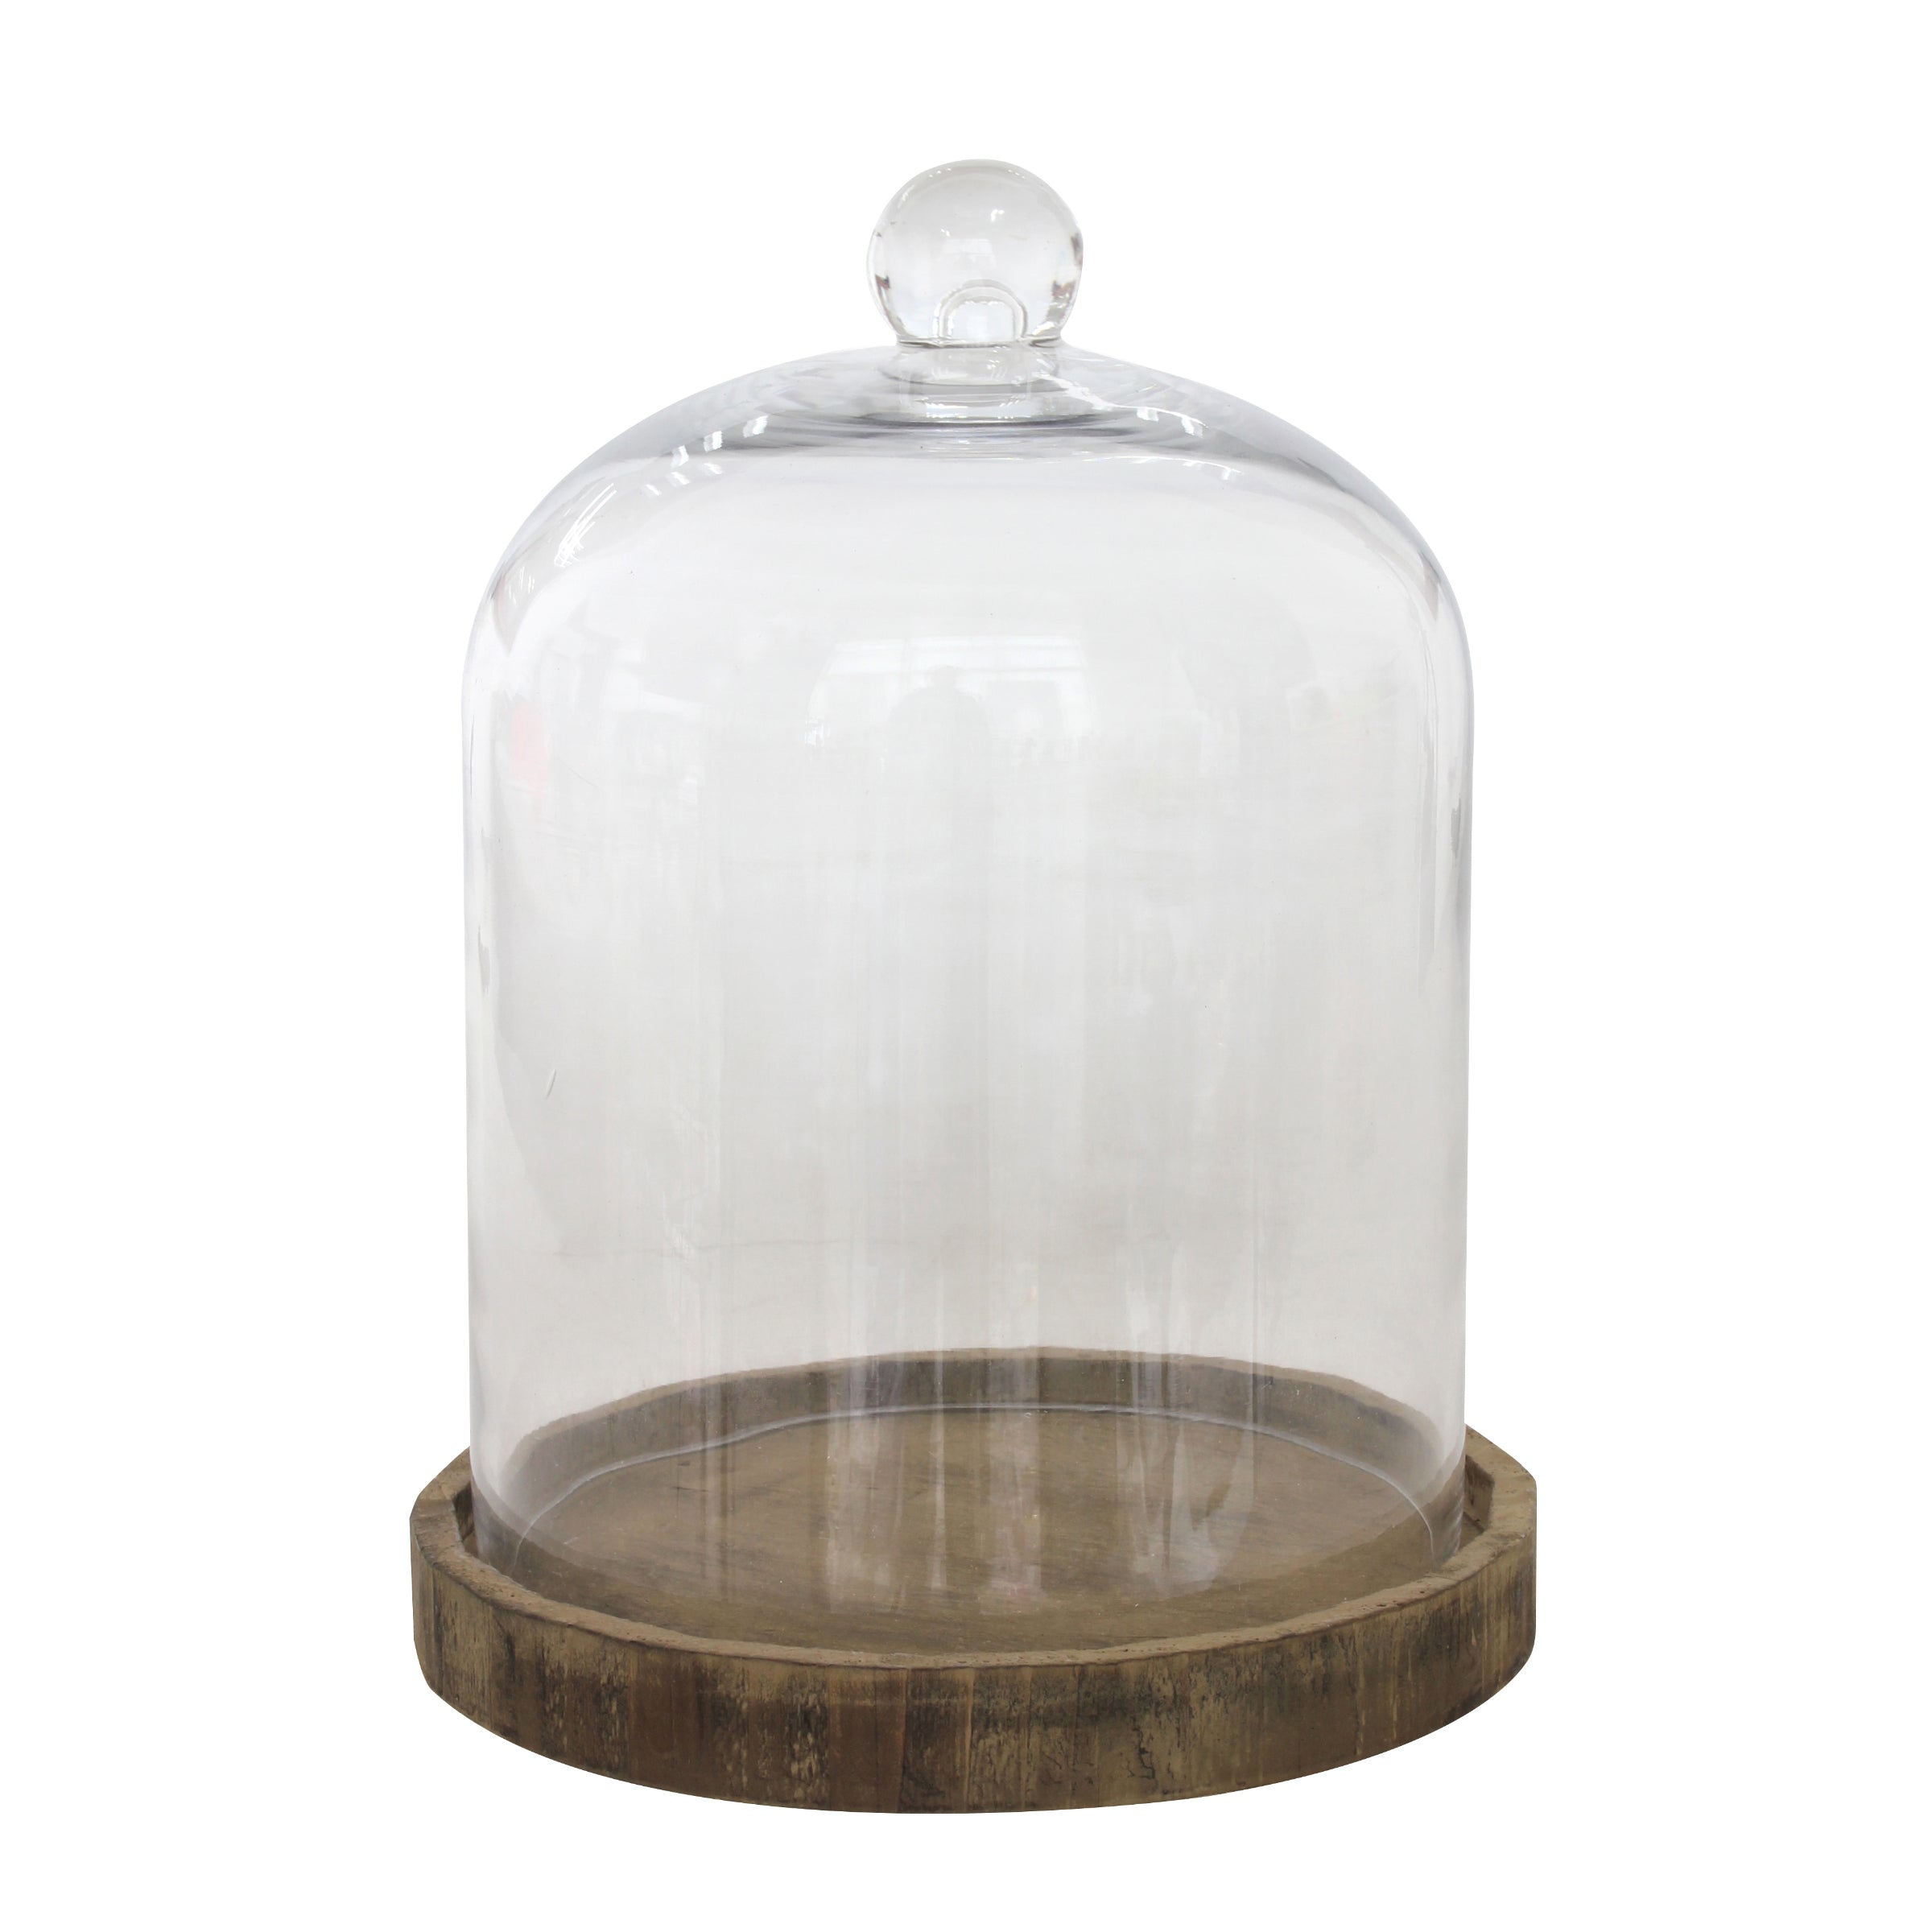 Decorative Rustic Glass Dome Cloche | Home Decor | Wedding Decor | SB-10329B | Stonebriar Collection